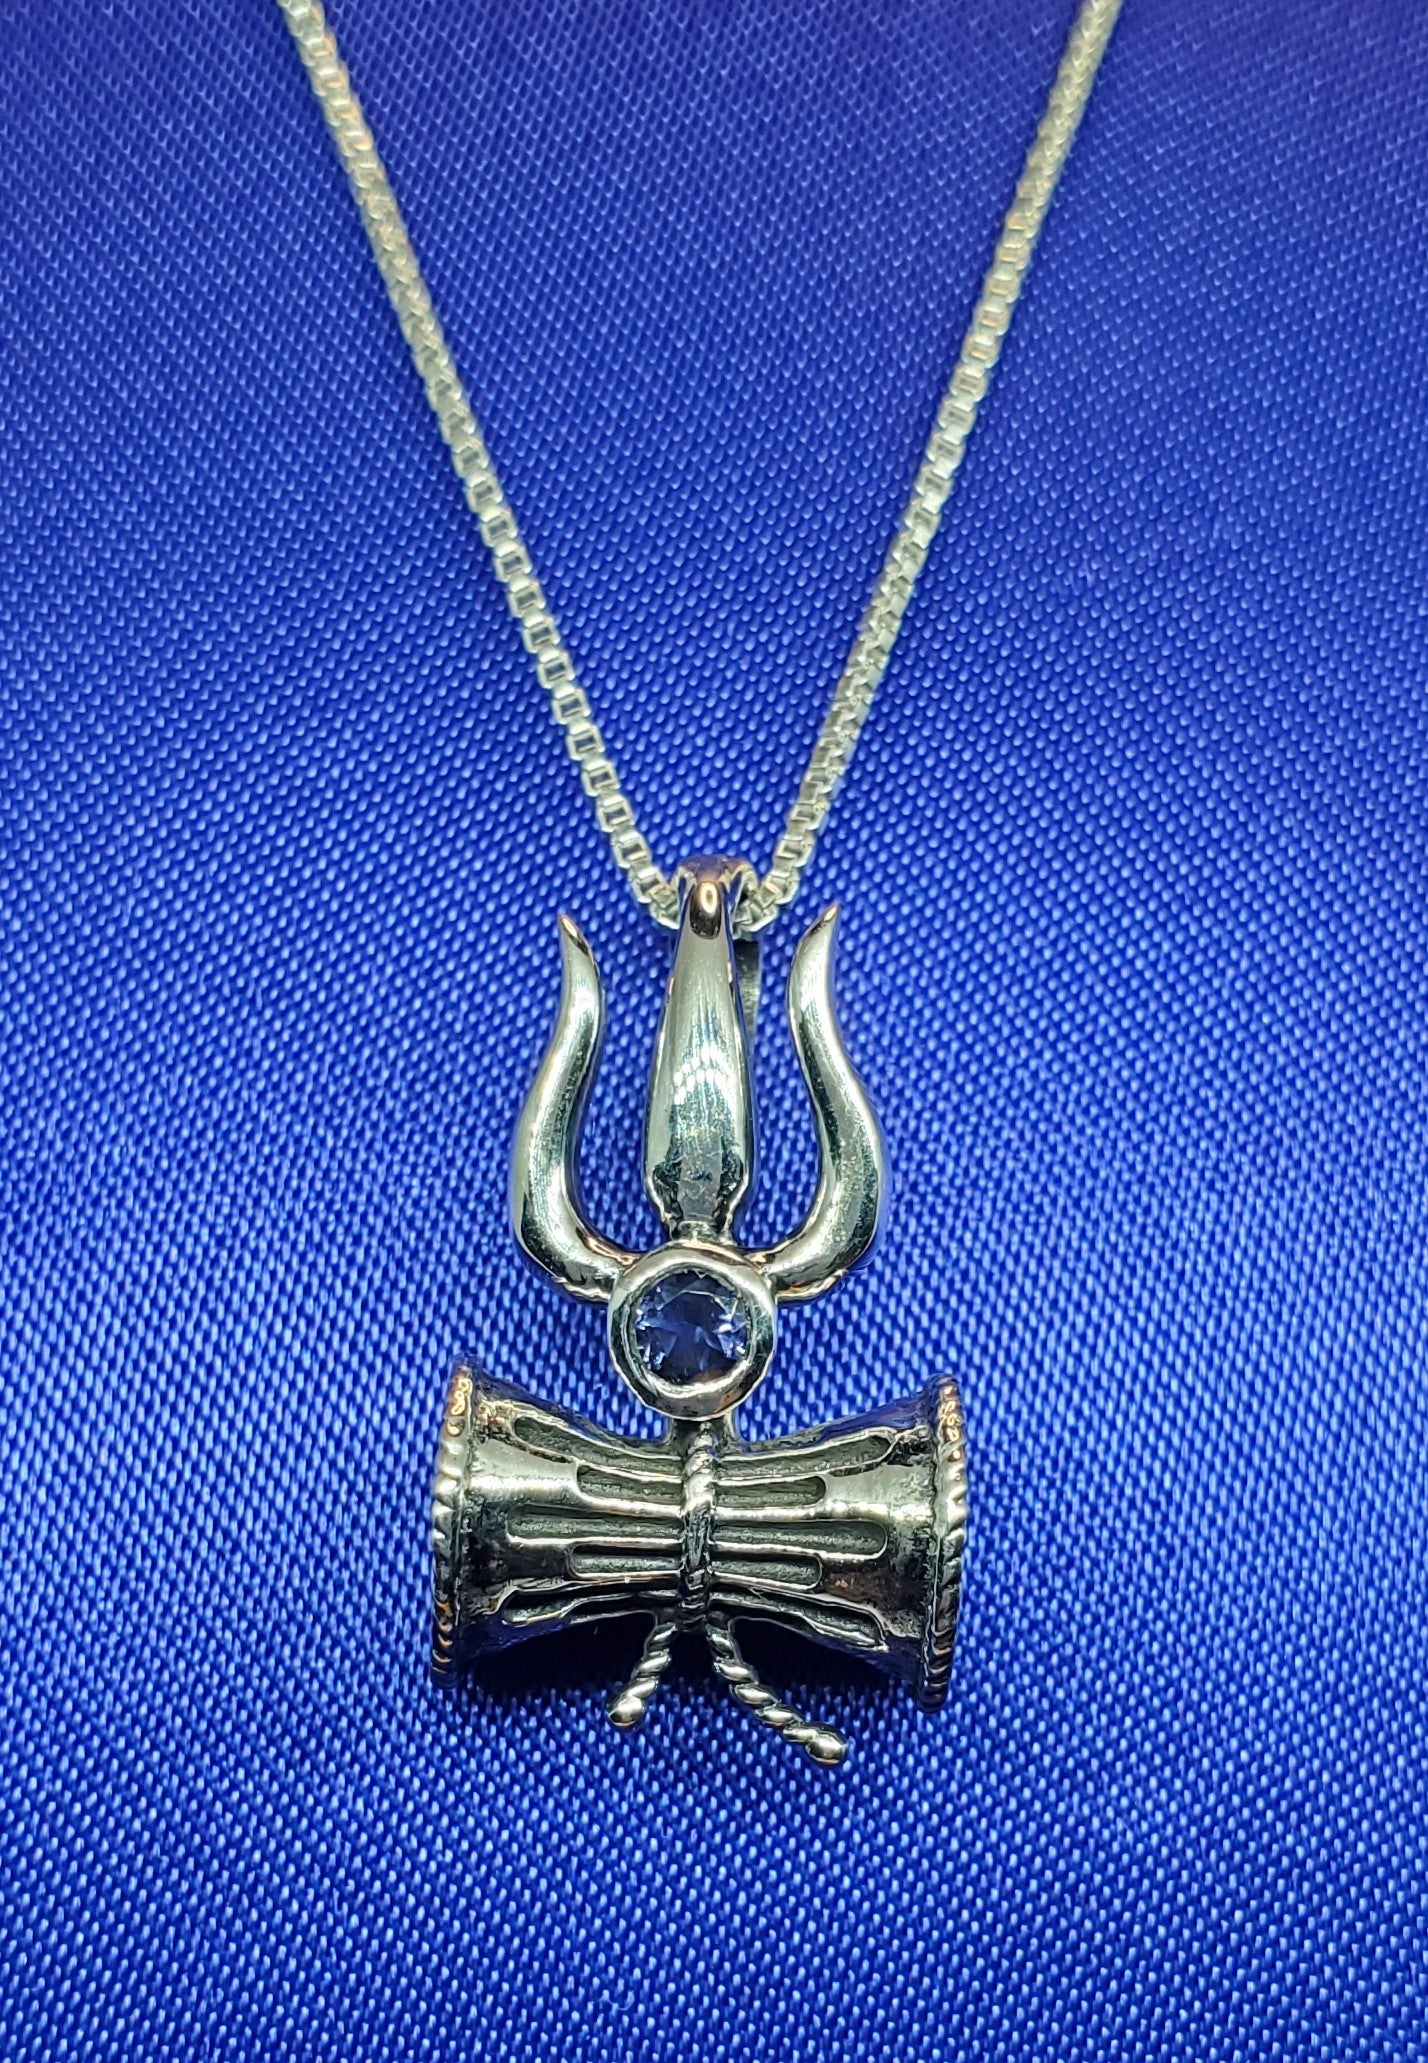 Lord Shiva Pendant in Sterling Silver with Iolite semi-precious stone